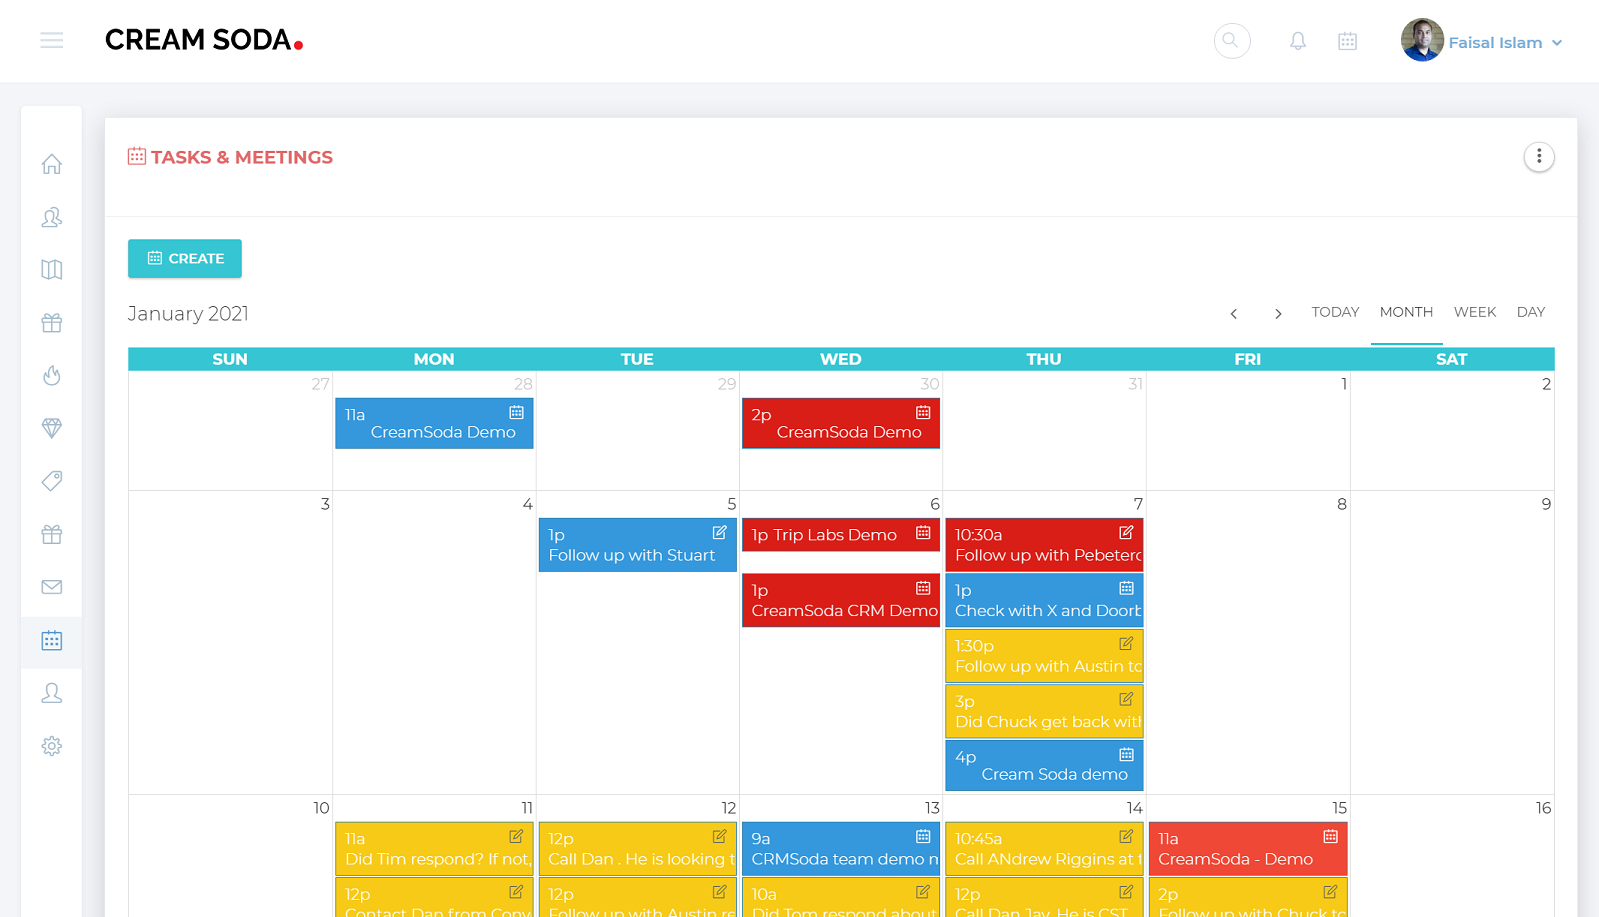 Schedule tasks and meetings